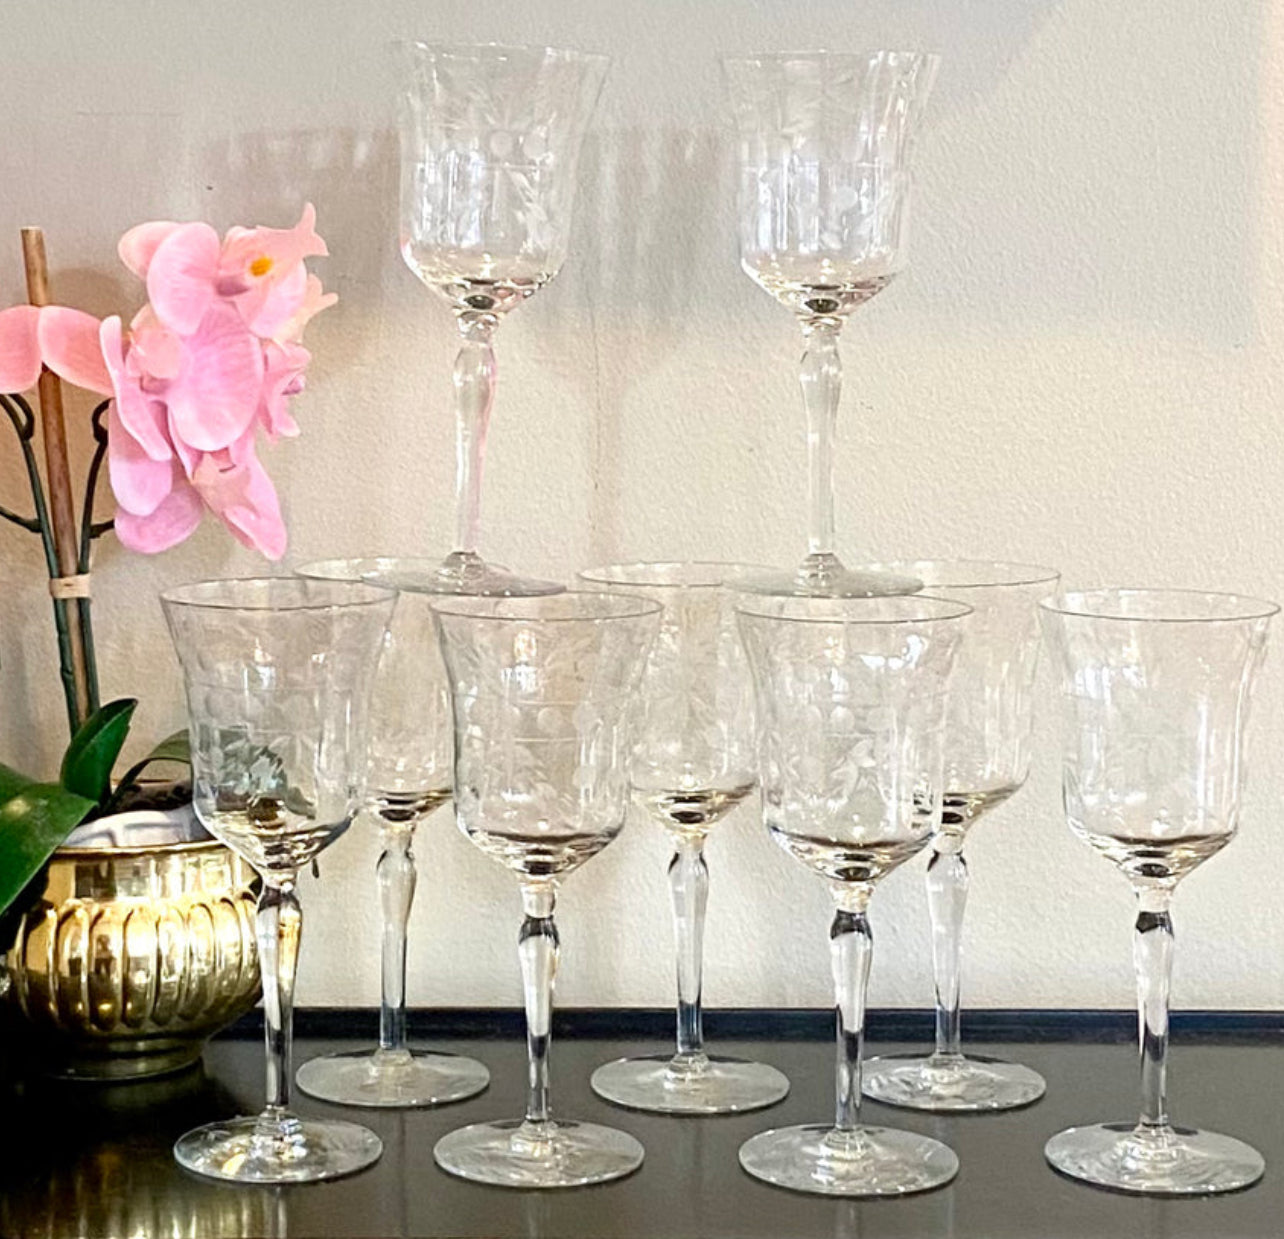 Set of 8 (plus 1) sparkling vintage etched wine glasses stem ware.